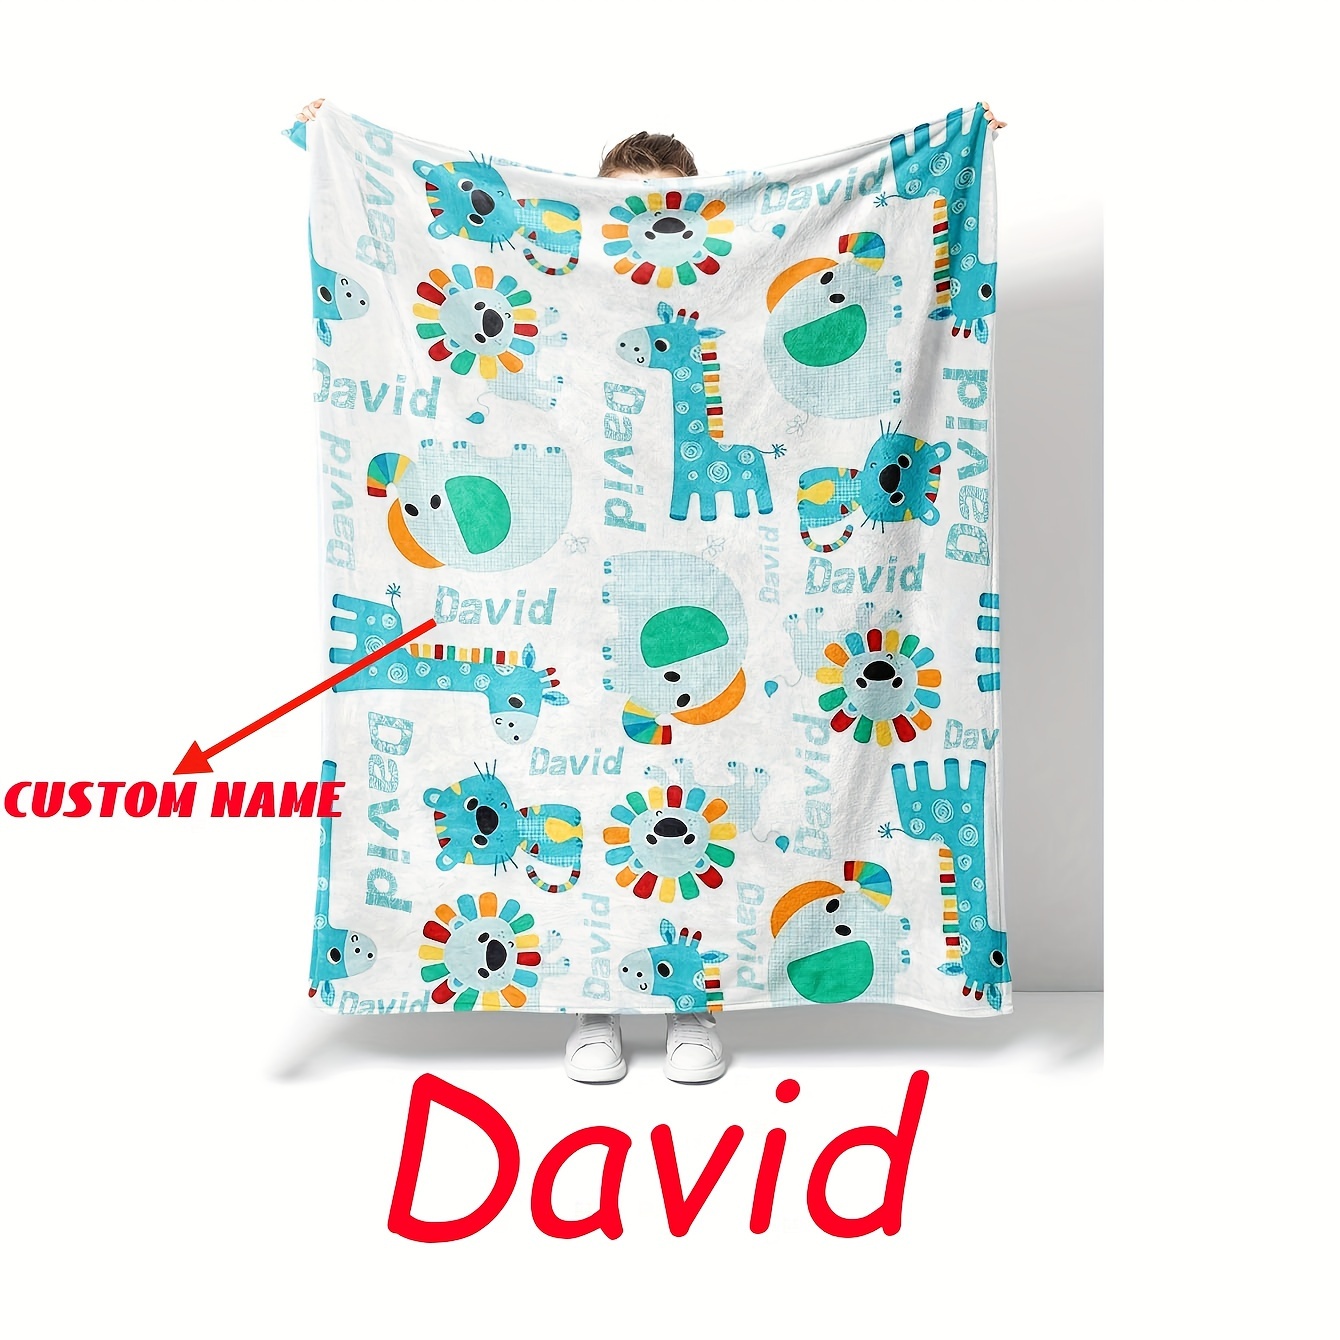 

1pc Custom Flannel Digital Printed Blanket, Fun Cartoon Animal Blanket, Name Custom Blanket, Suitable For Bedroom Sofa Lunch Break Office